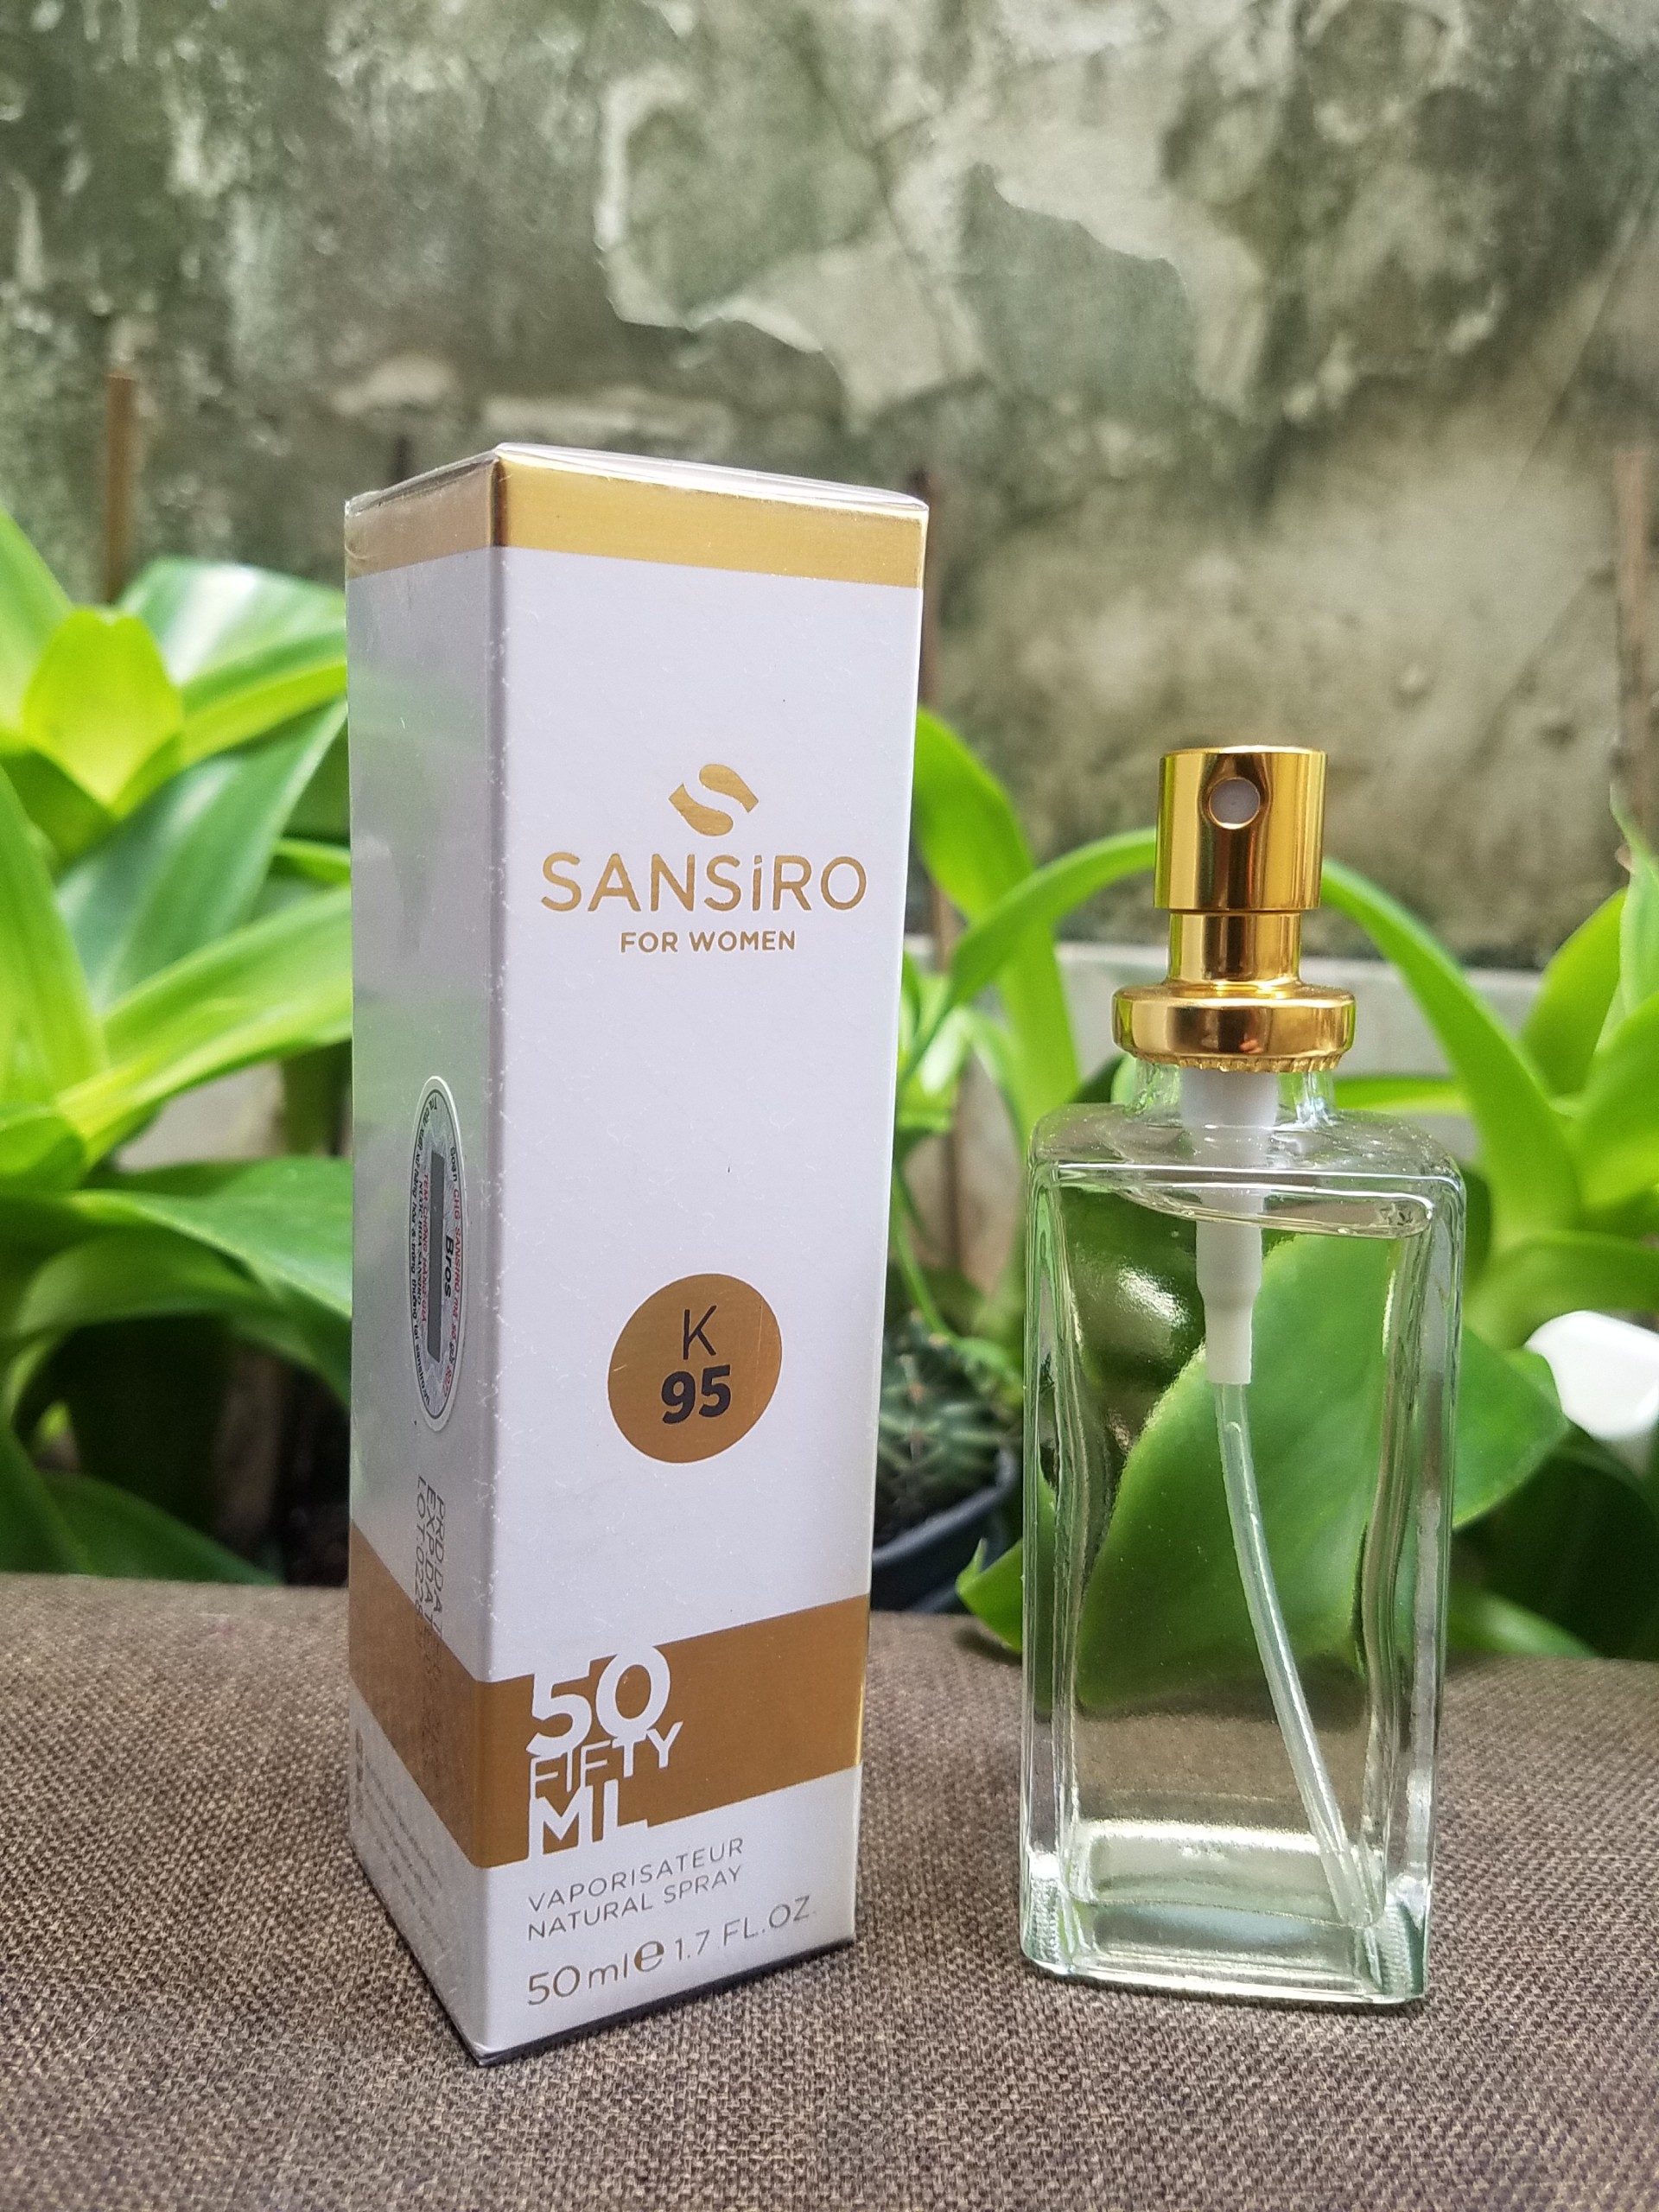 K95 - Nước hoa Sansiro 50ml cho nữ